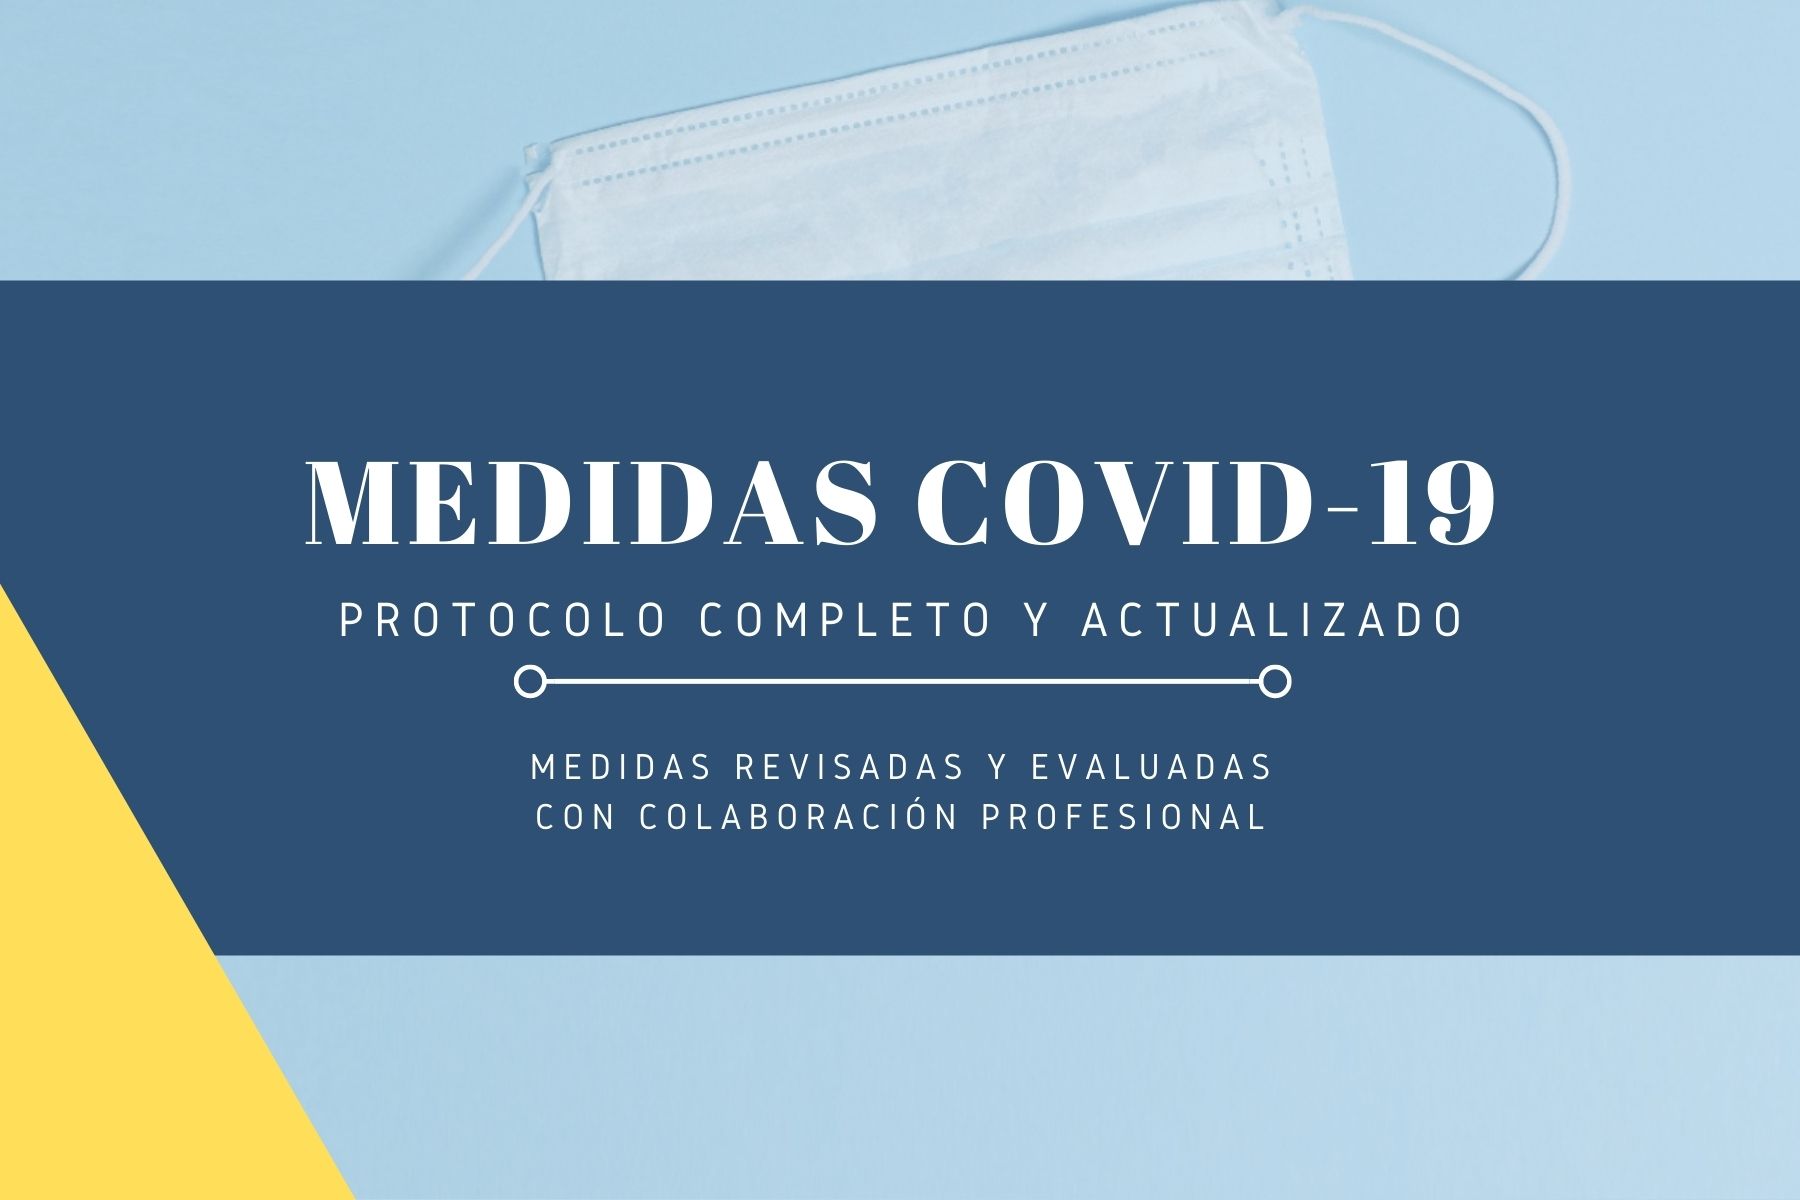 Medidas COVID 19